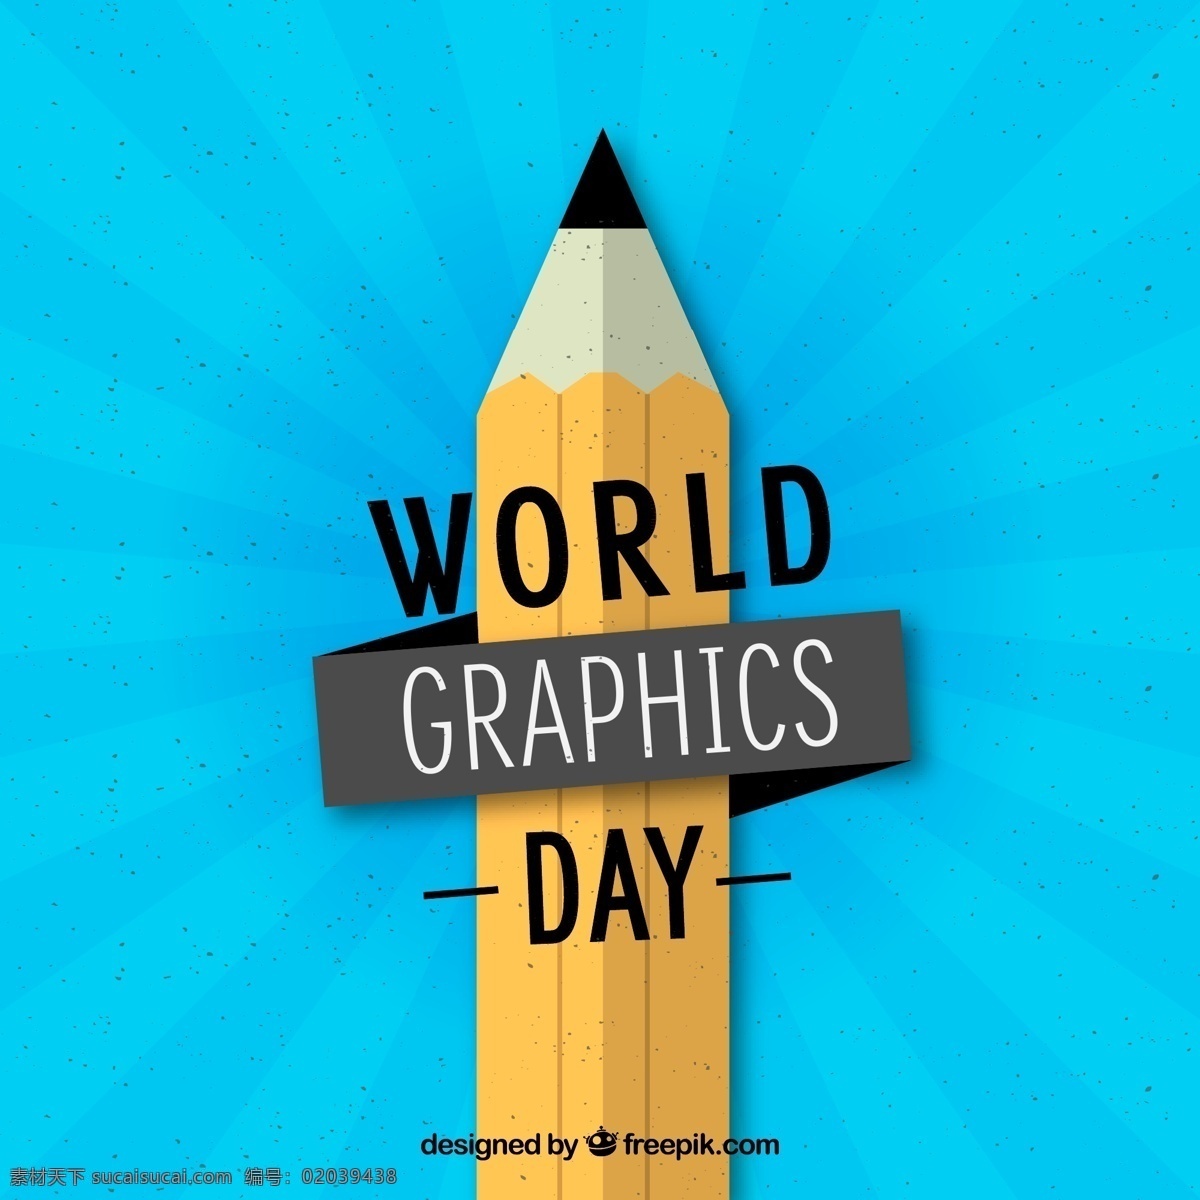 扁平化 世界 平面设计 日 铅笔 world graphics day 平面设计日 文化艺术 绘画书法